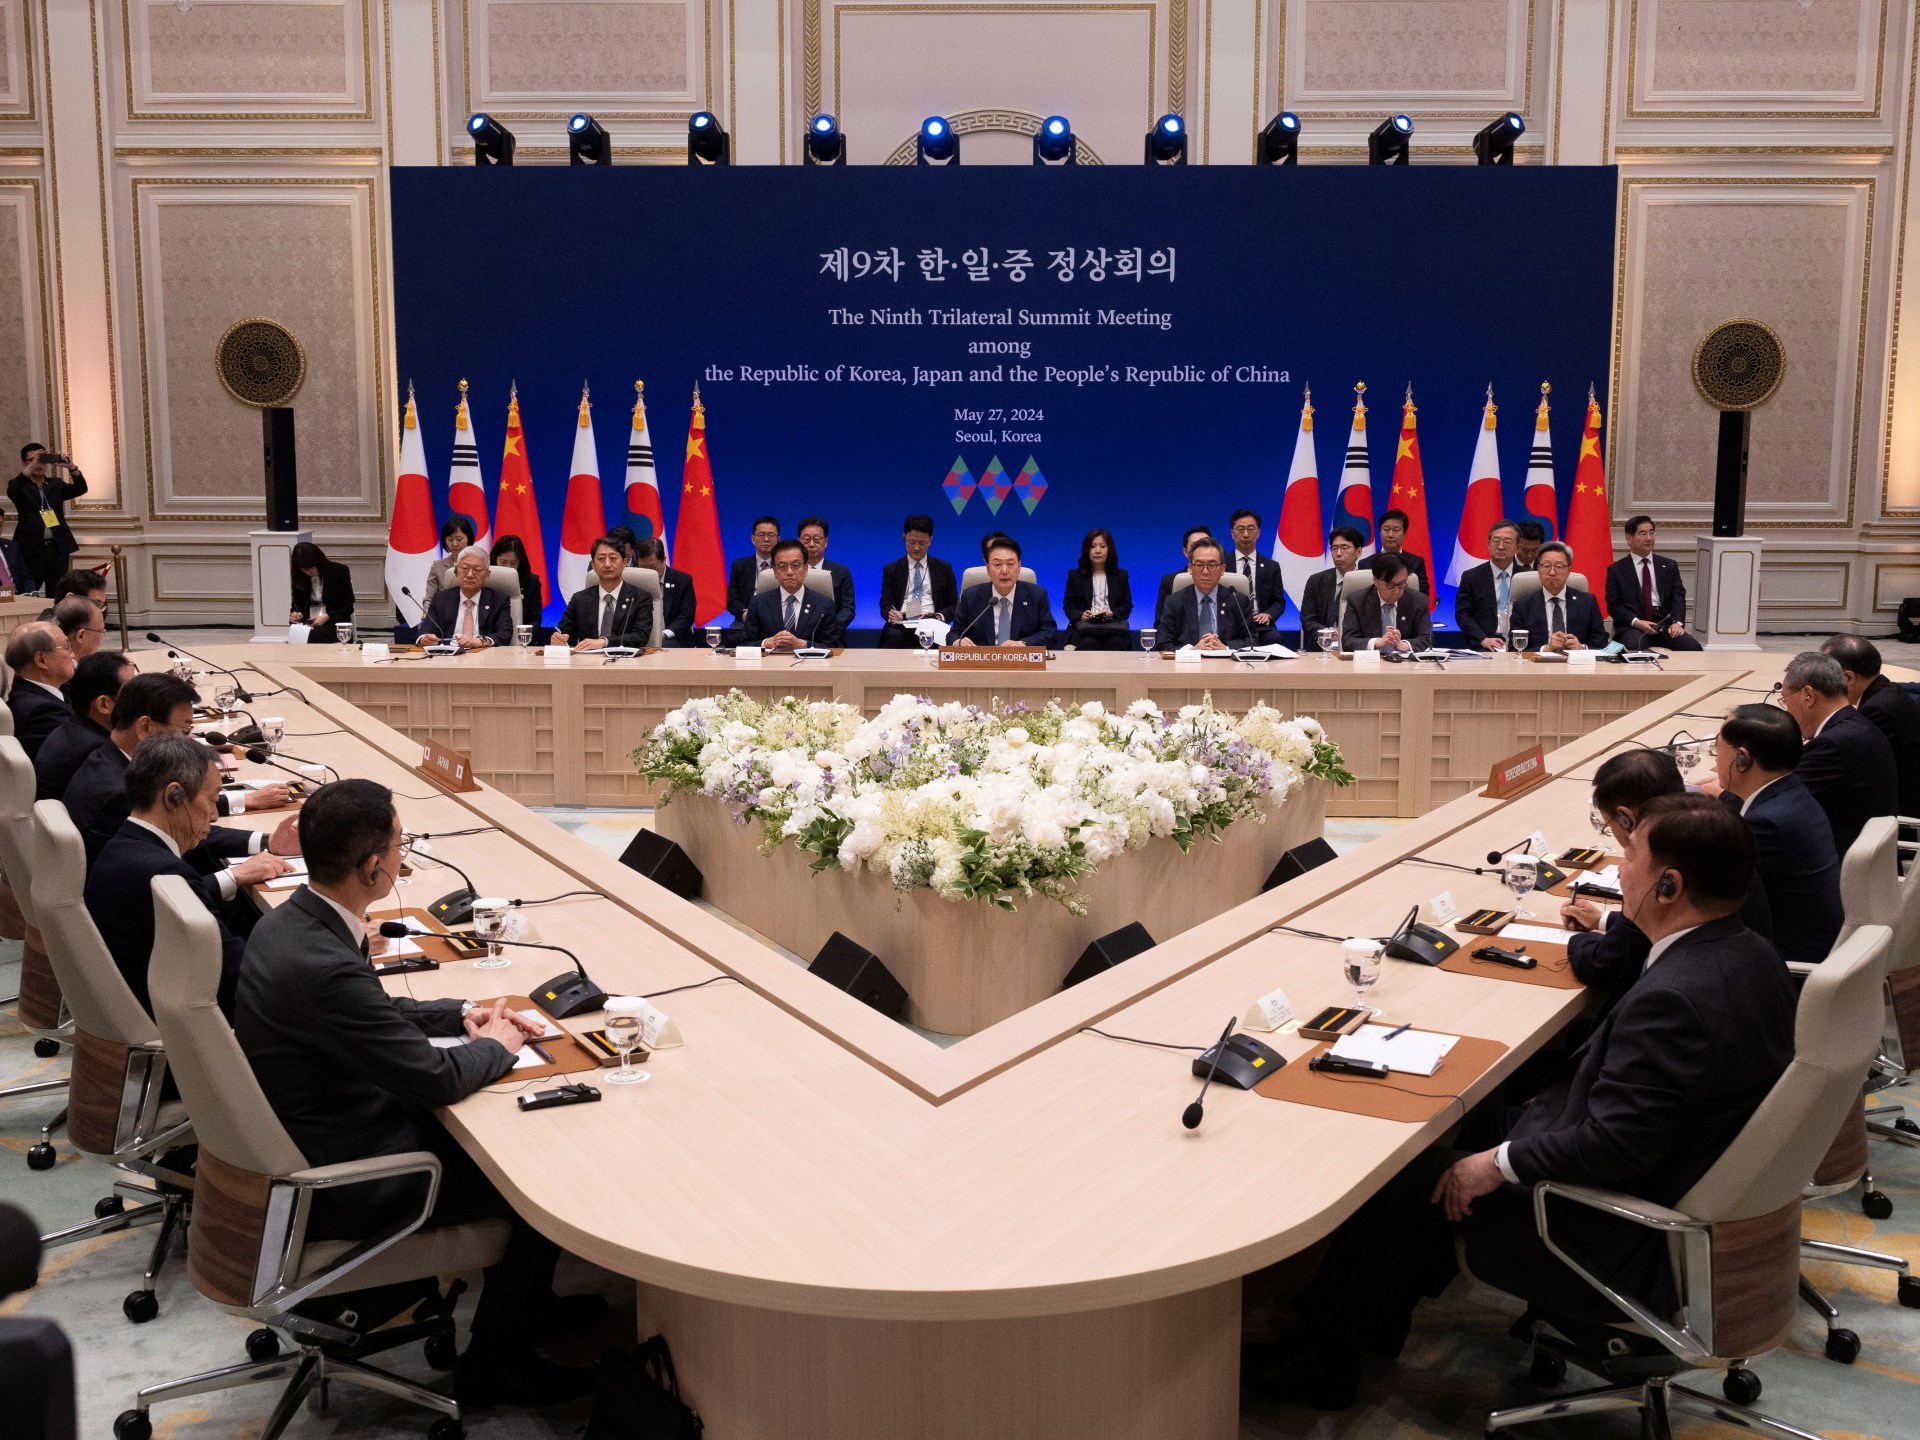 الصين تحث كوريا الجنوبية واليابان على دعم التجارة الحرة في القمة الثلاثية |  الأعمال والاقتصاد